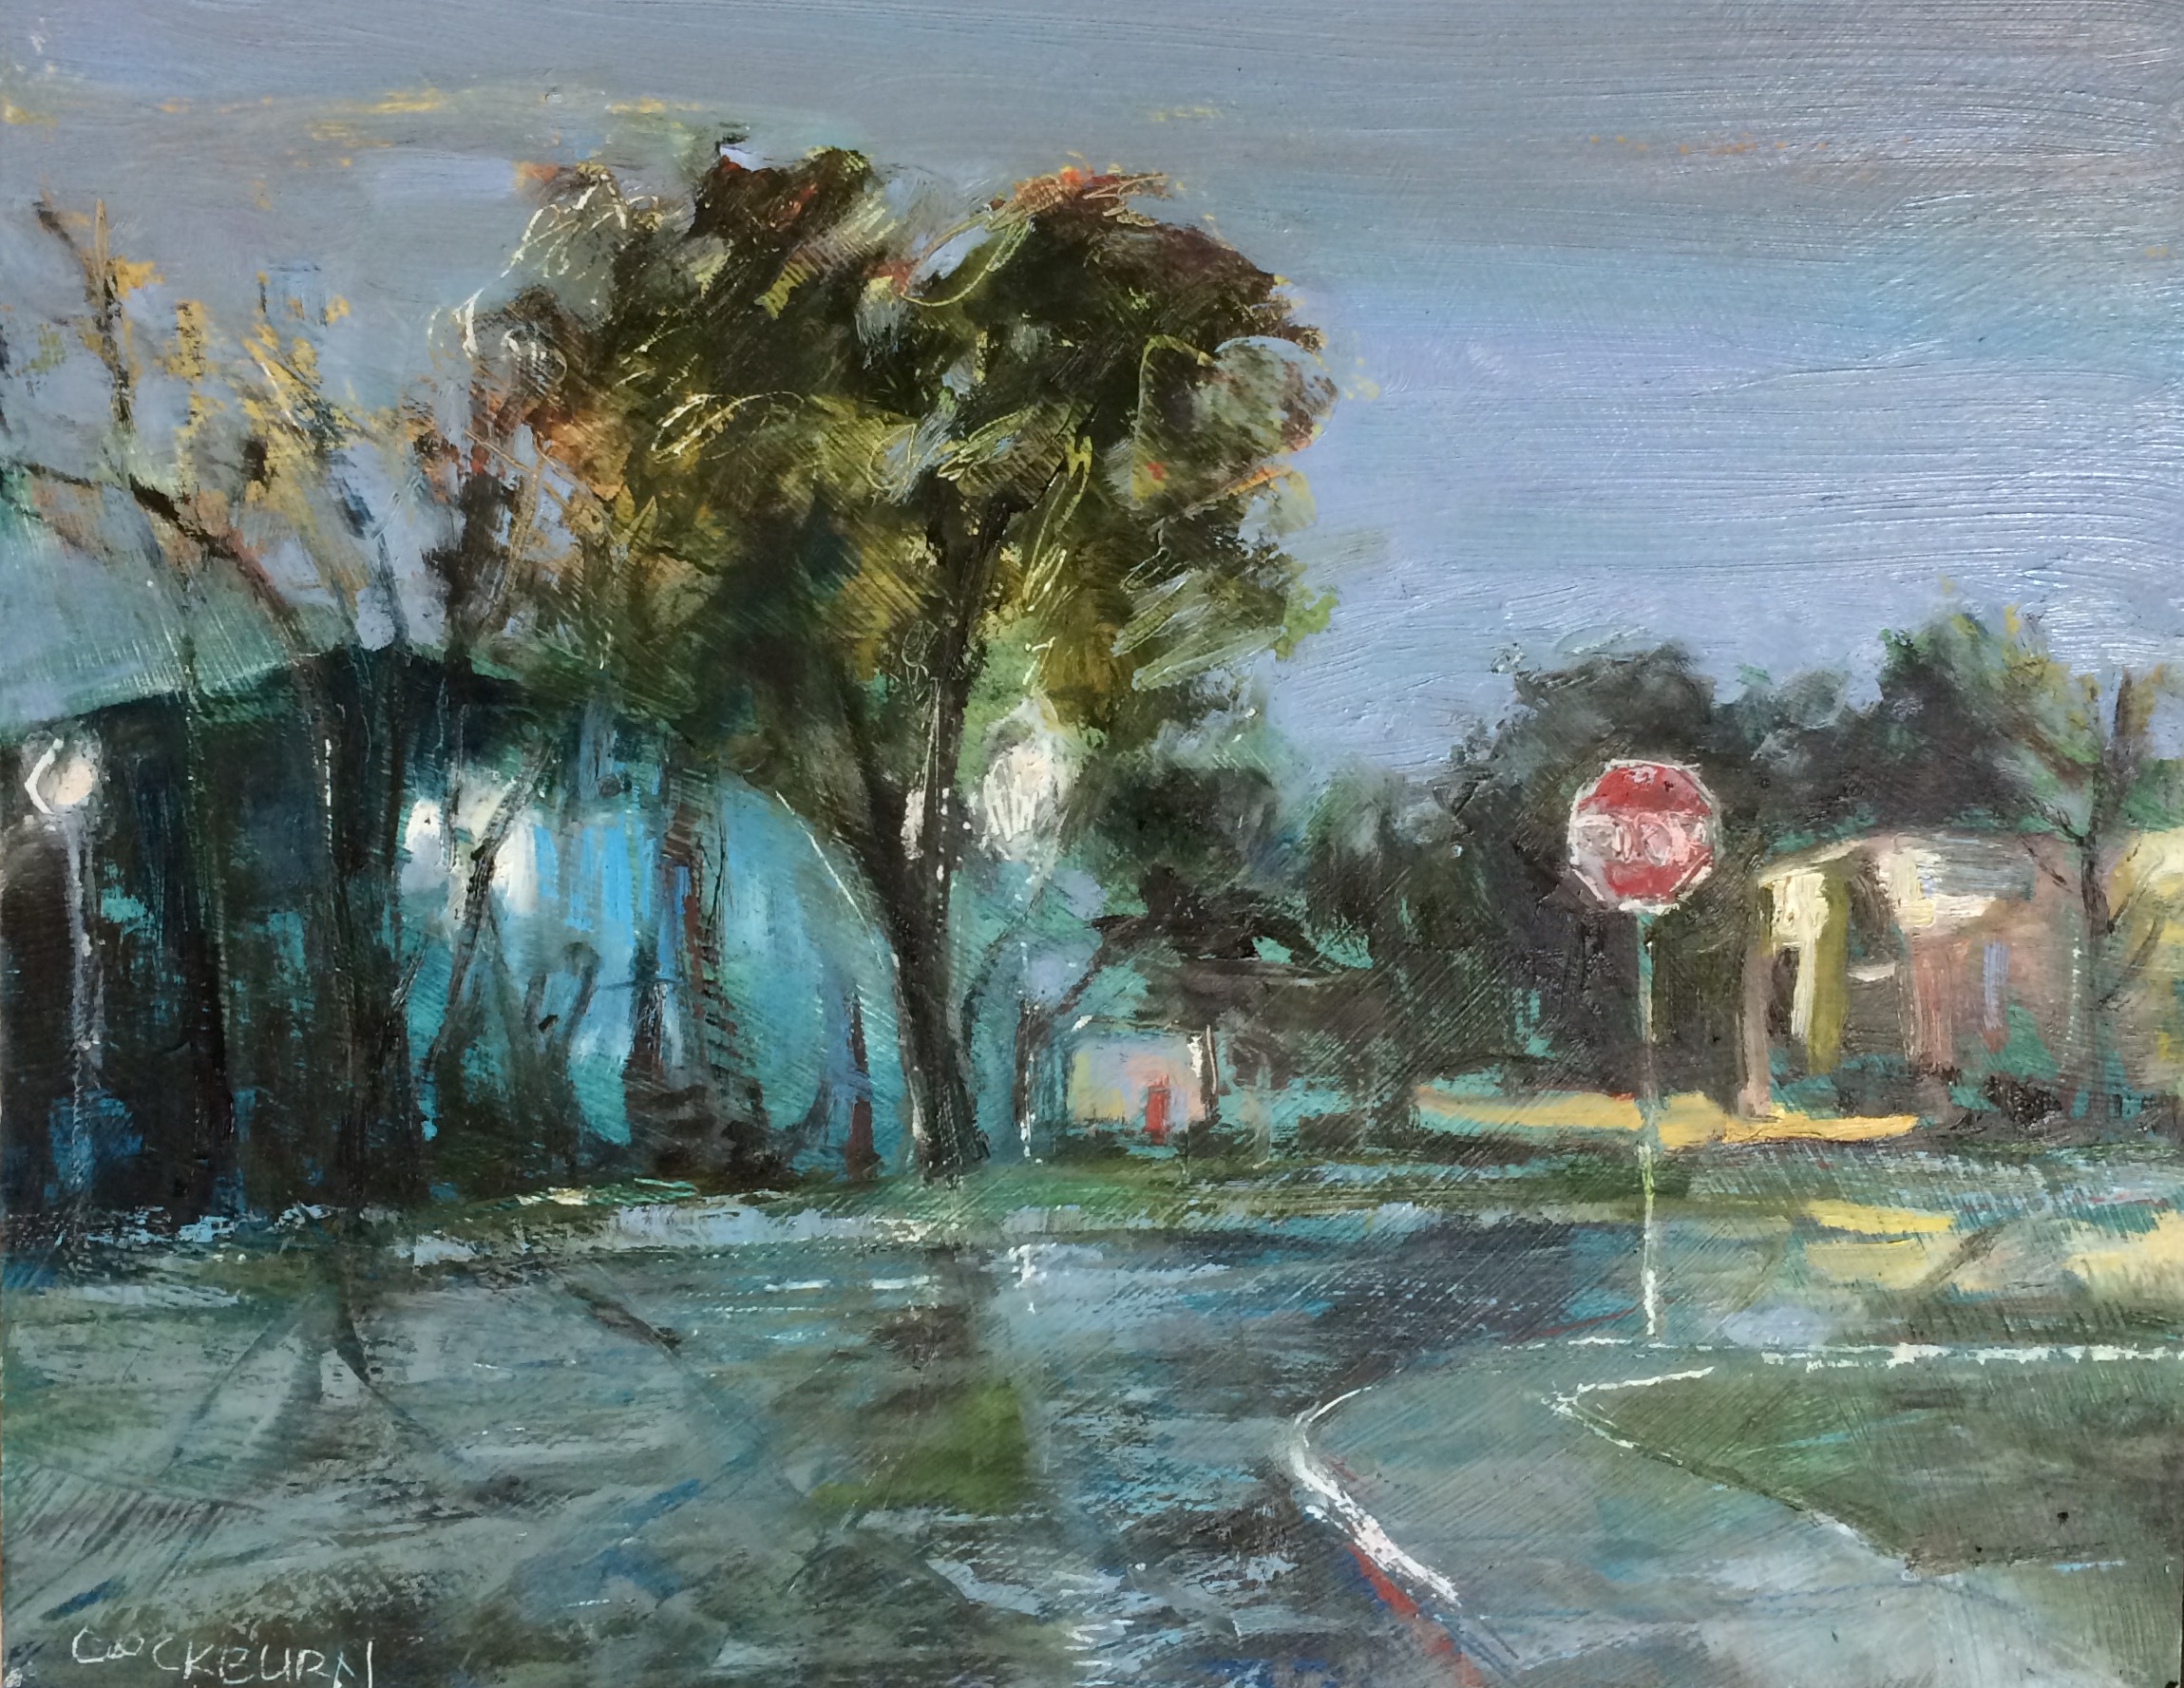 Caroline Street, 2016, oil on panel, 11"x14"